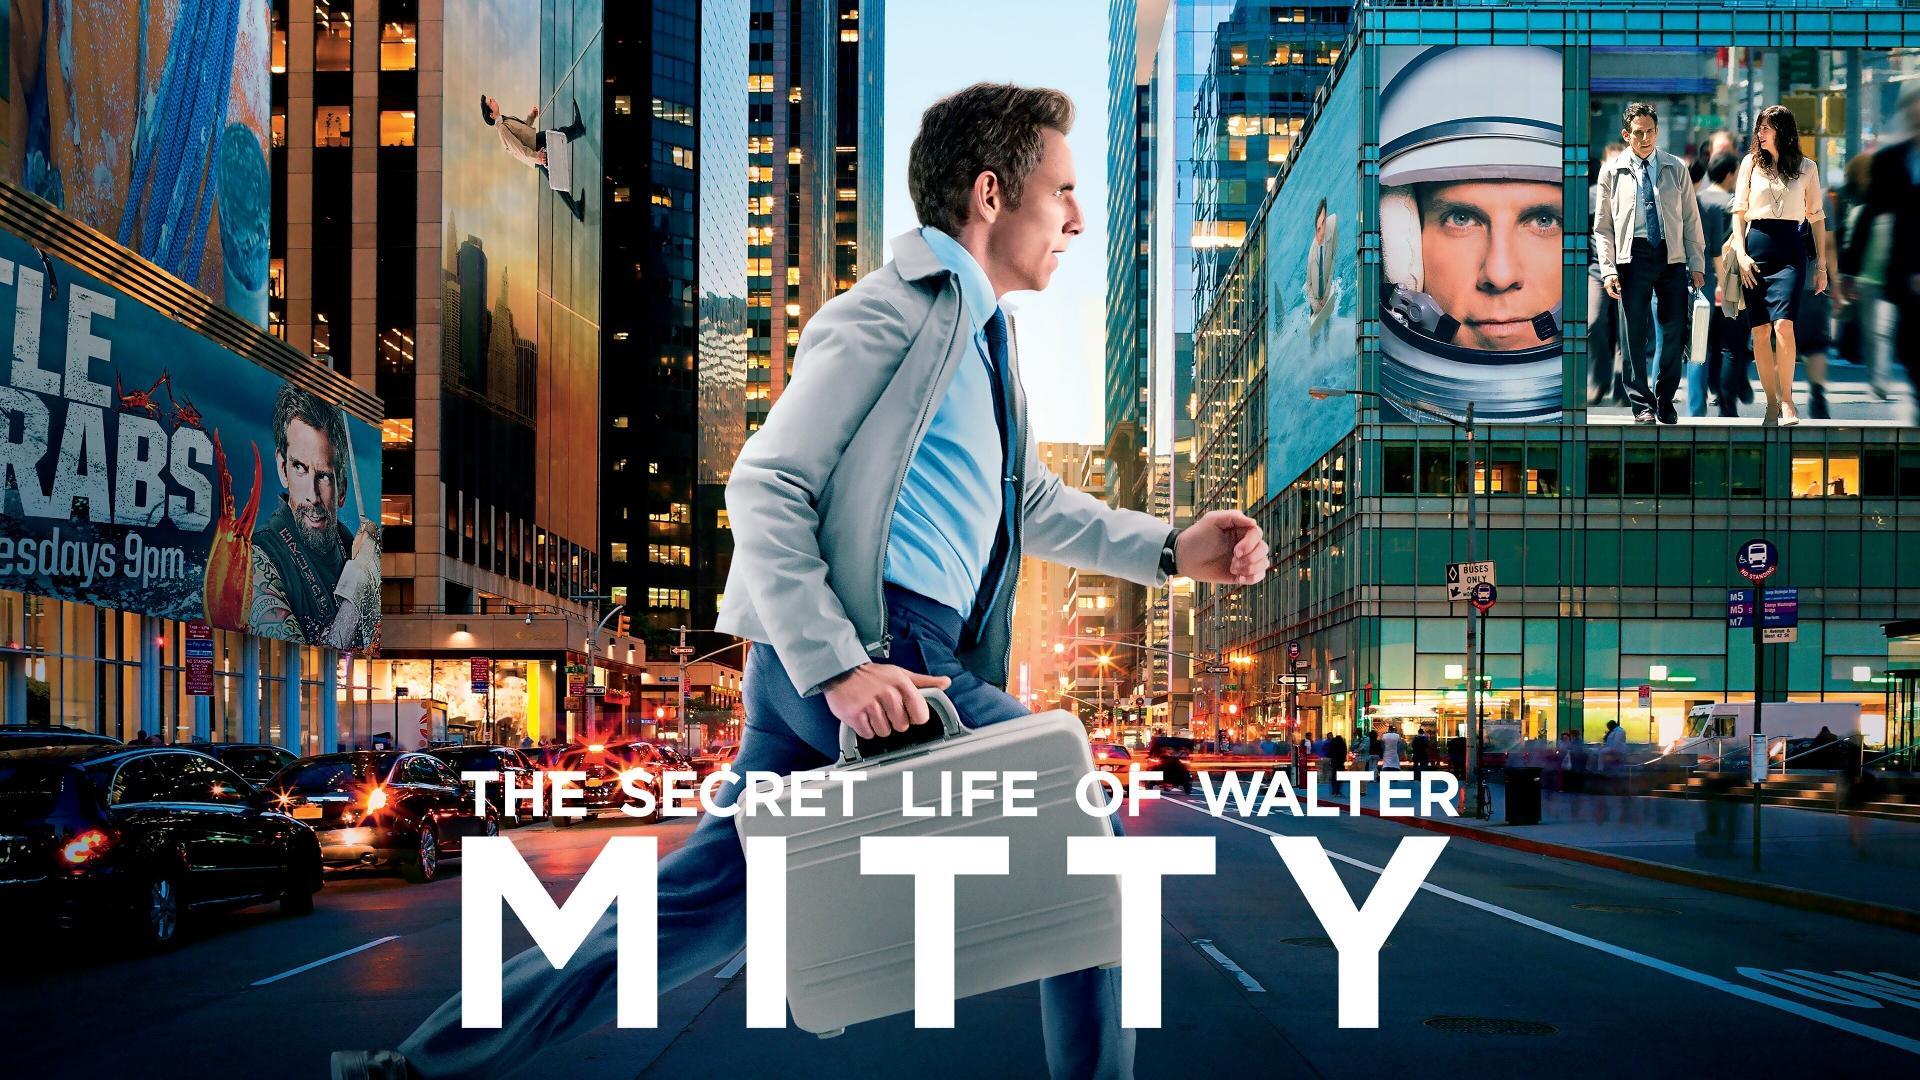 უოლტერ მიტის საიდუმლო ცხოვრება / The Secret Life of Walter Mitty